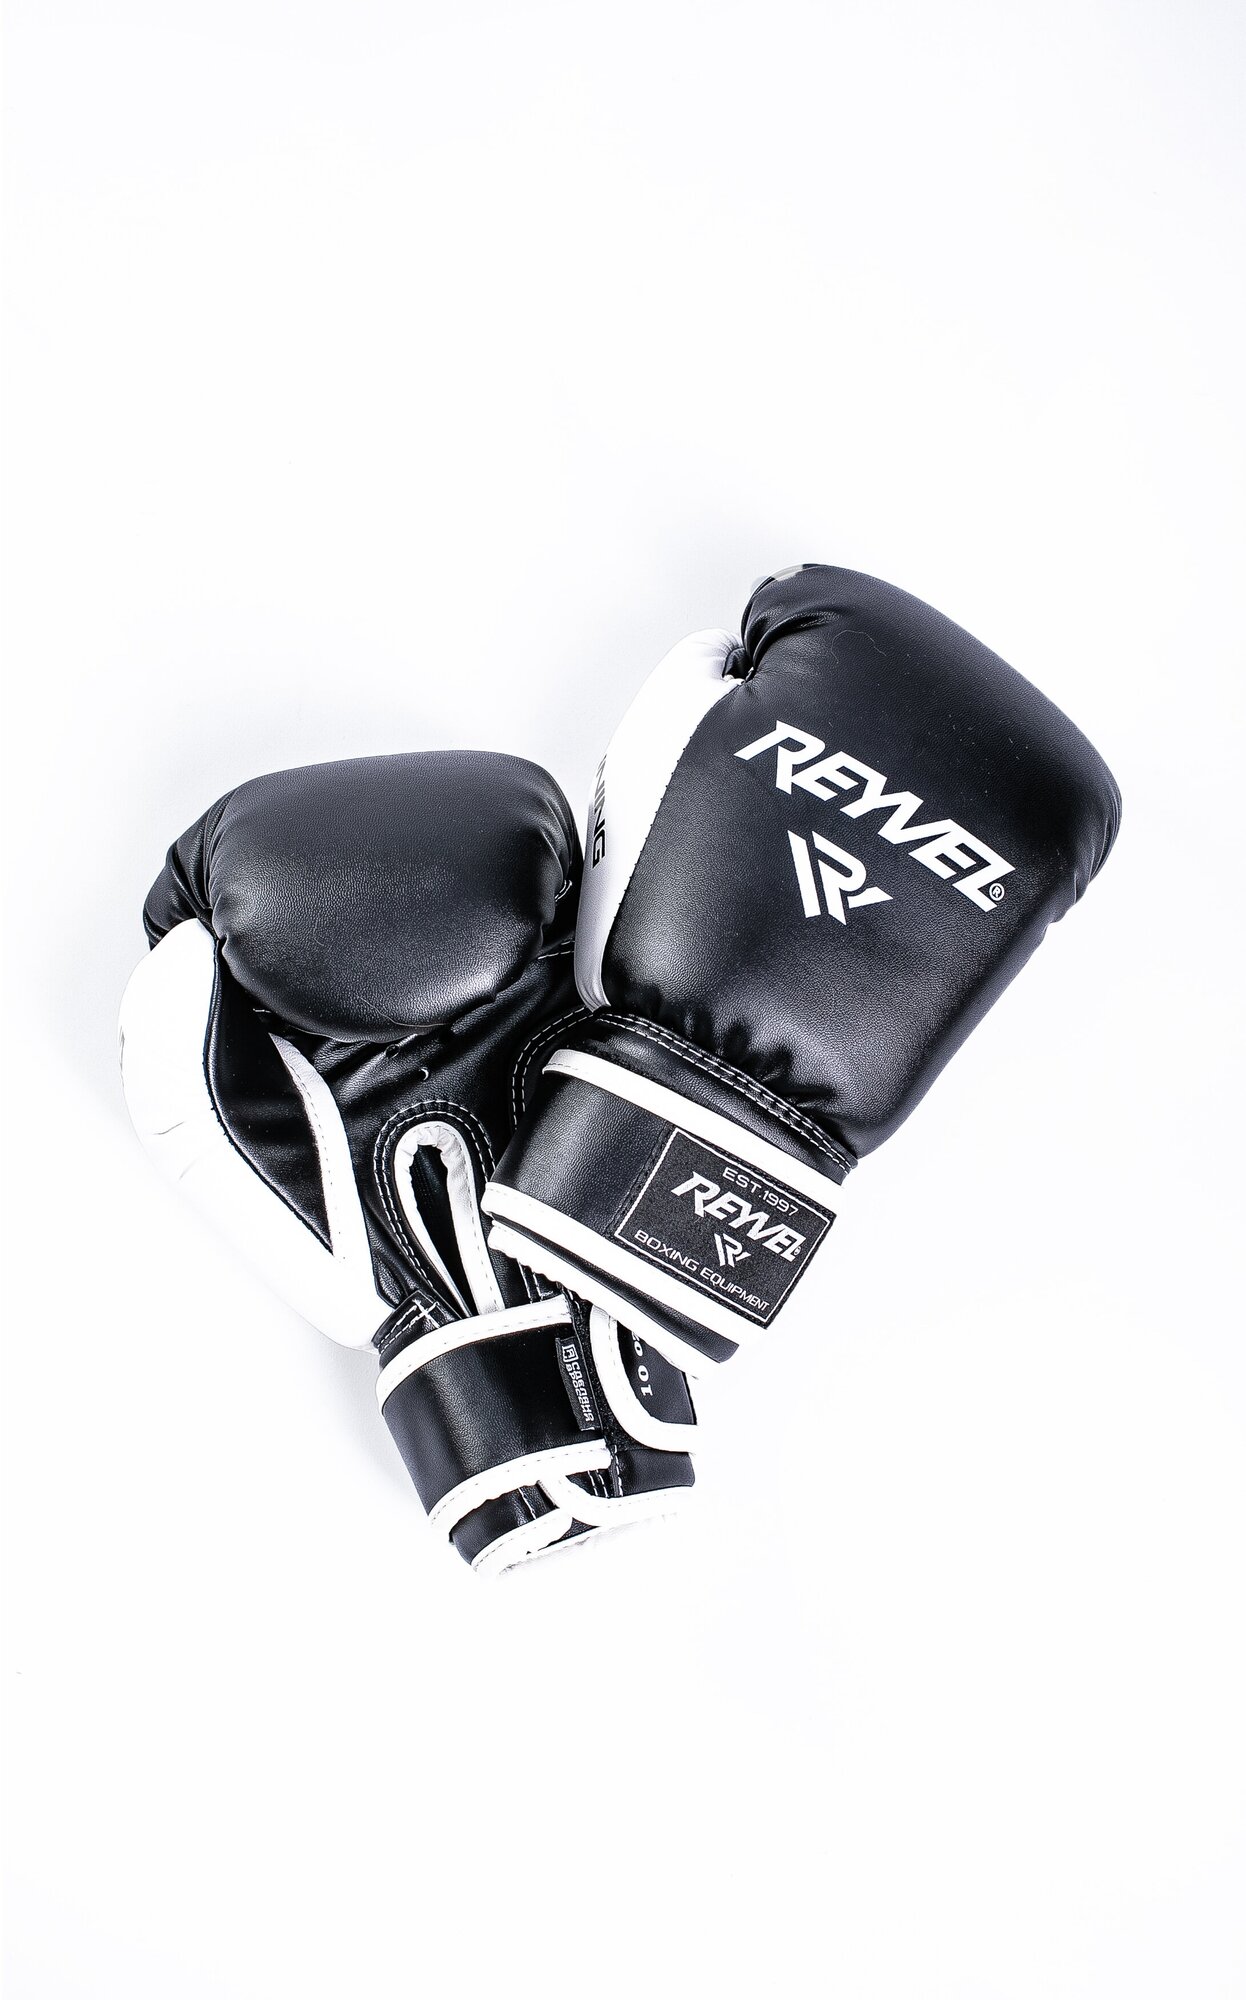 Перчатки боксёрские Beginning черные - Reyvel - Черный - 8 oz